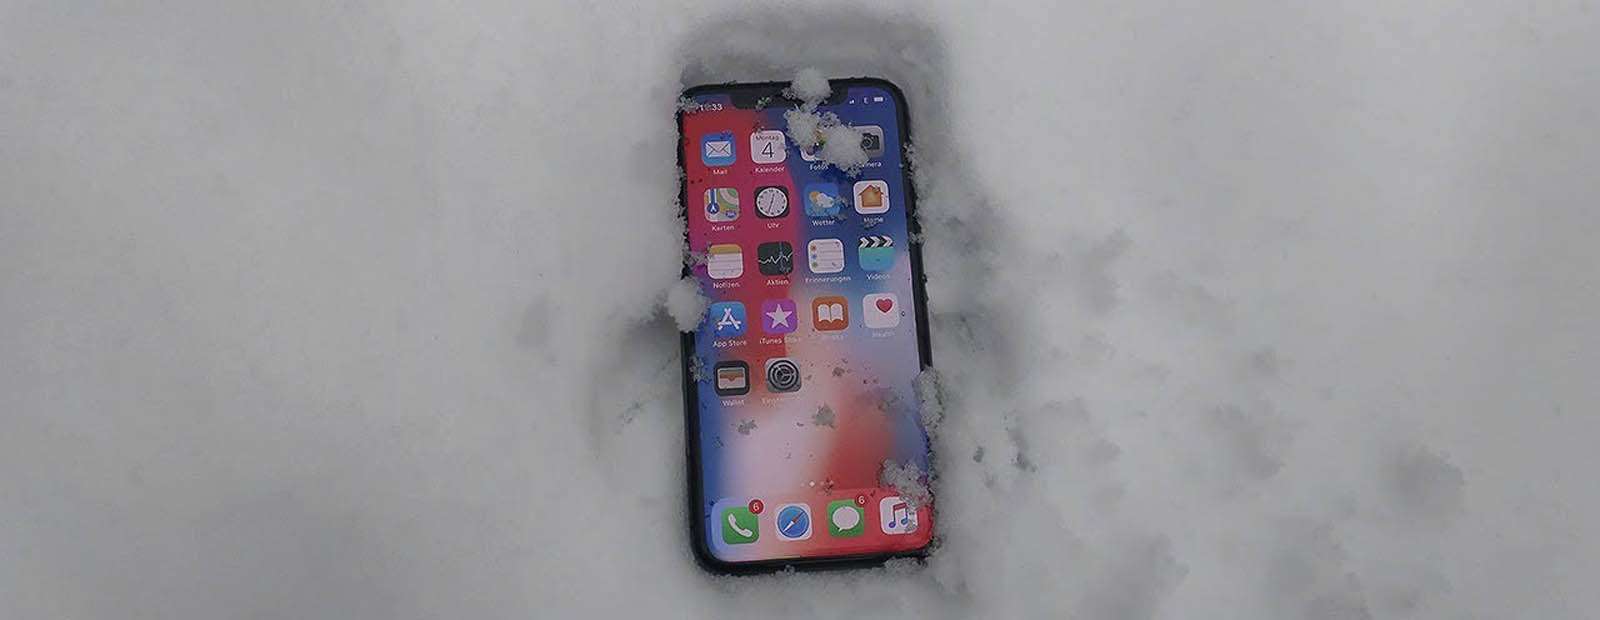 Почему iPhone выключается на холоде?